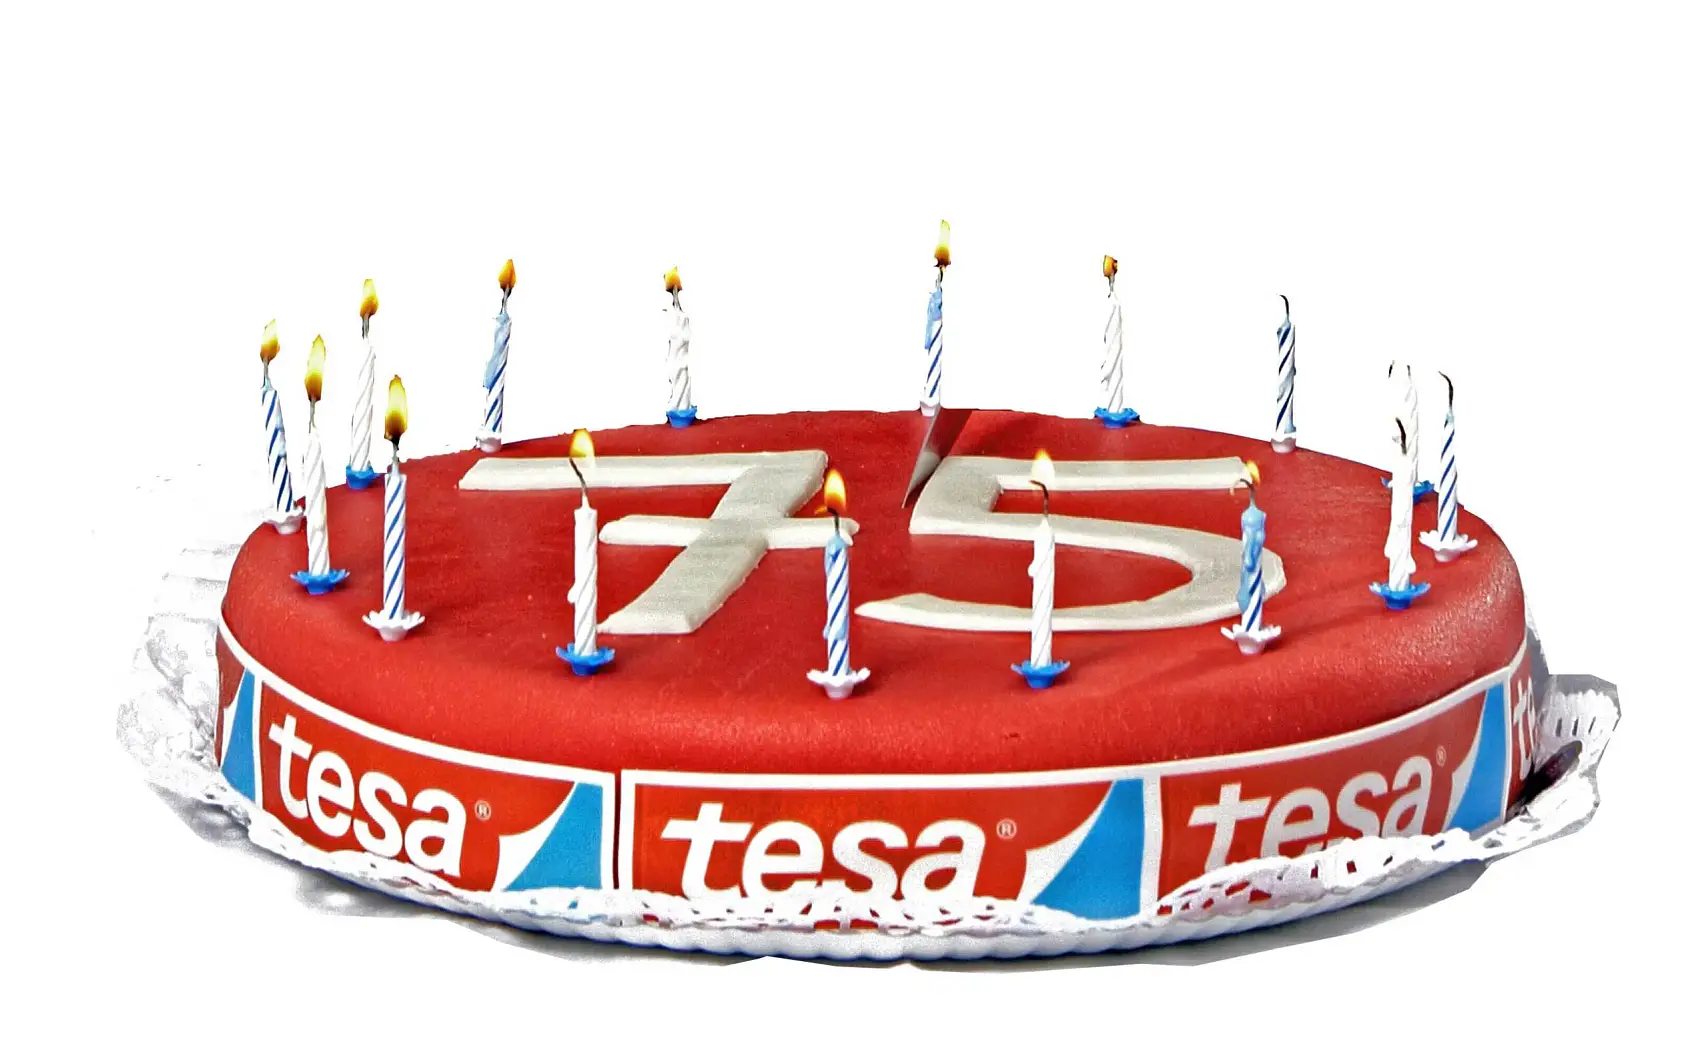 Vào năm 2011 tesa kỷ niệm 75 năm thành lập